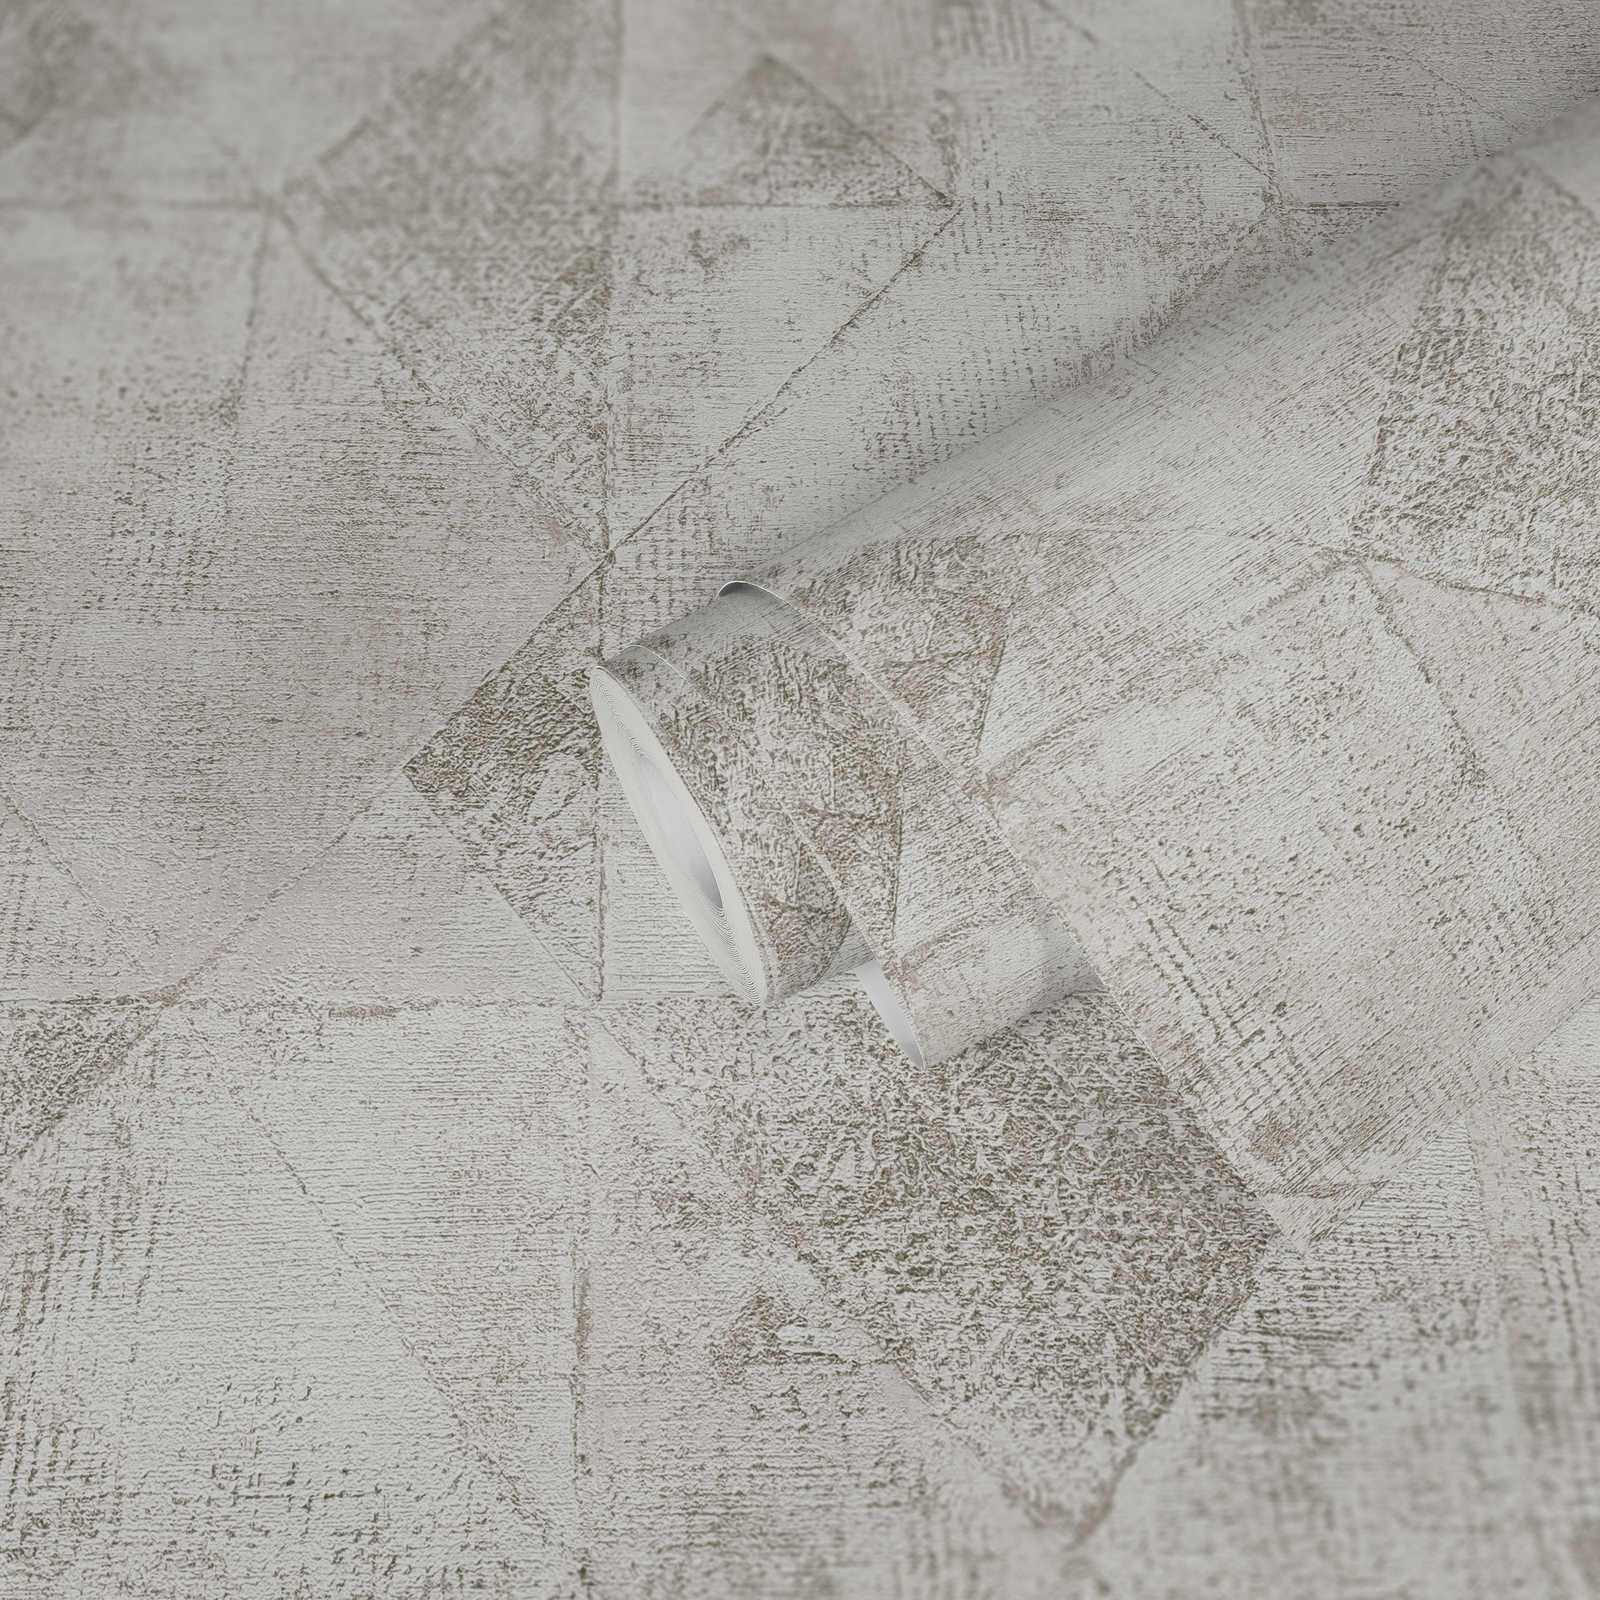             Onderlaag behang met grafisch metallic driehoekpatroon glanzend structuur - zilver, wit
        